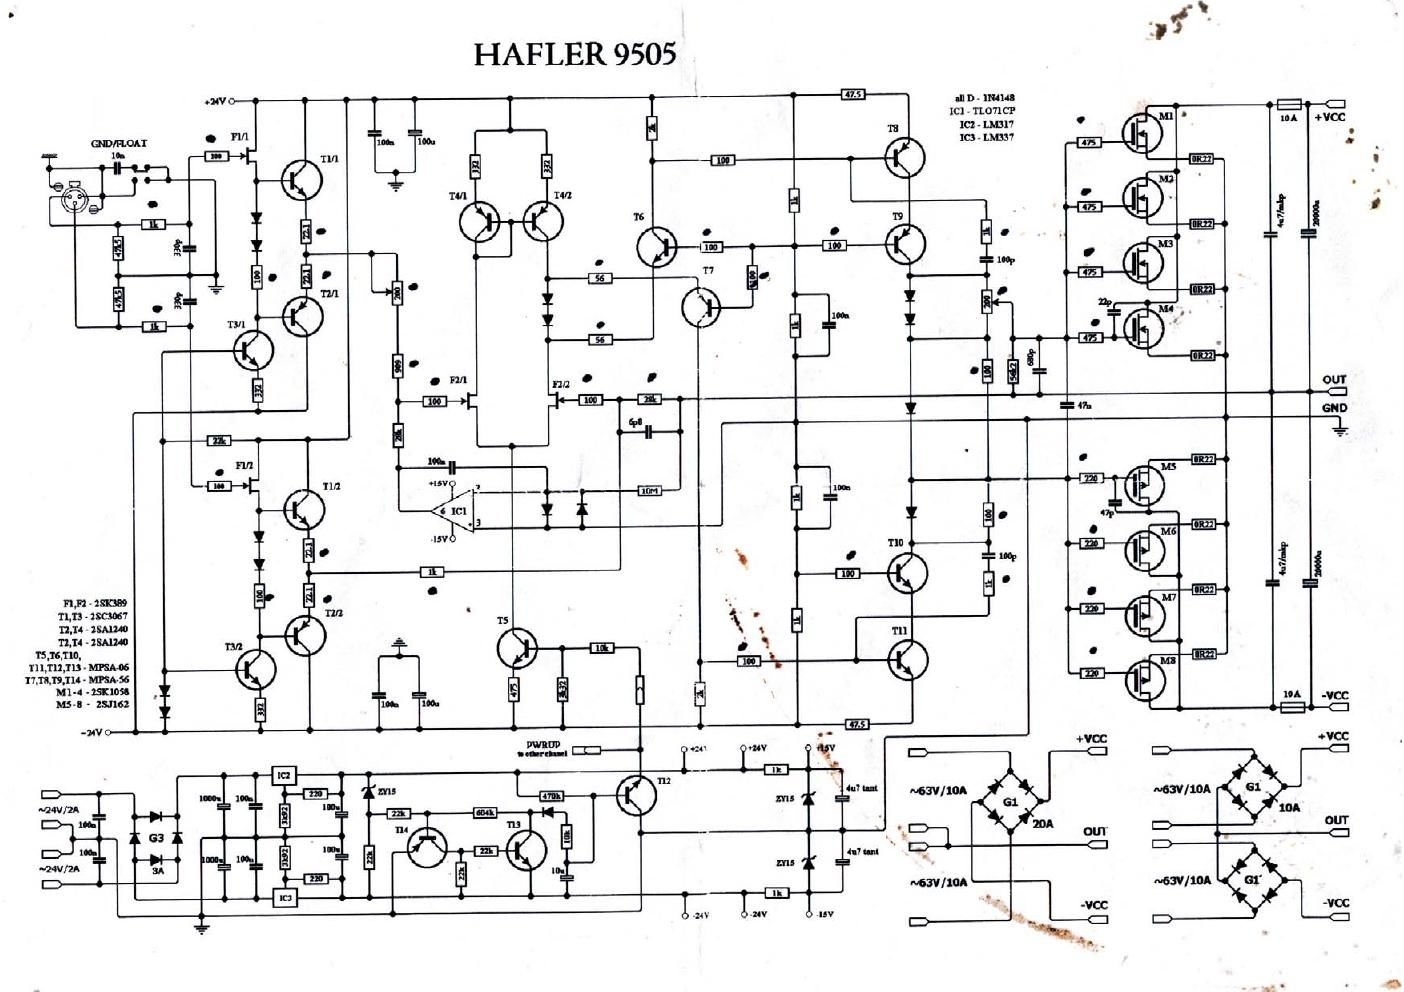 Hafler 9505 pwr sch